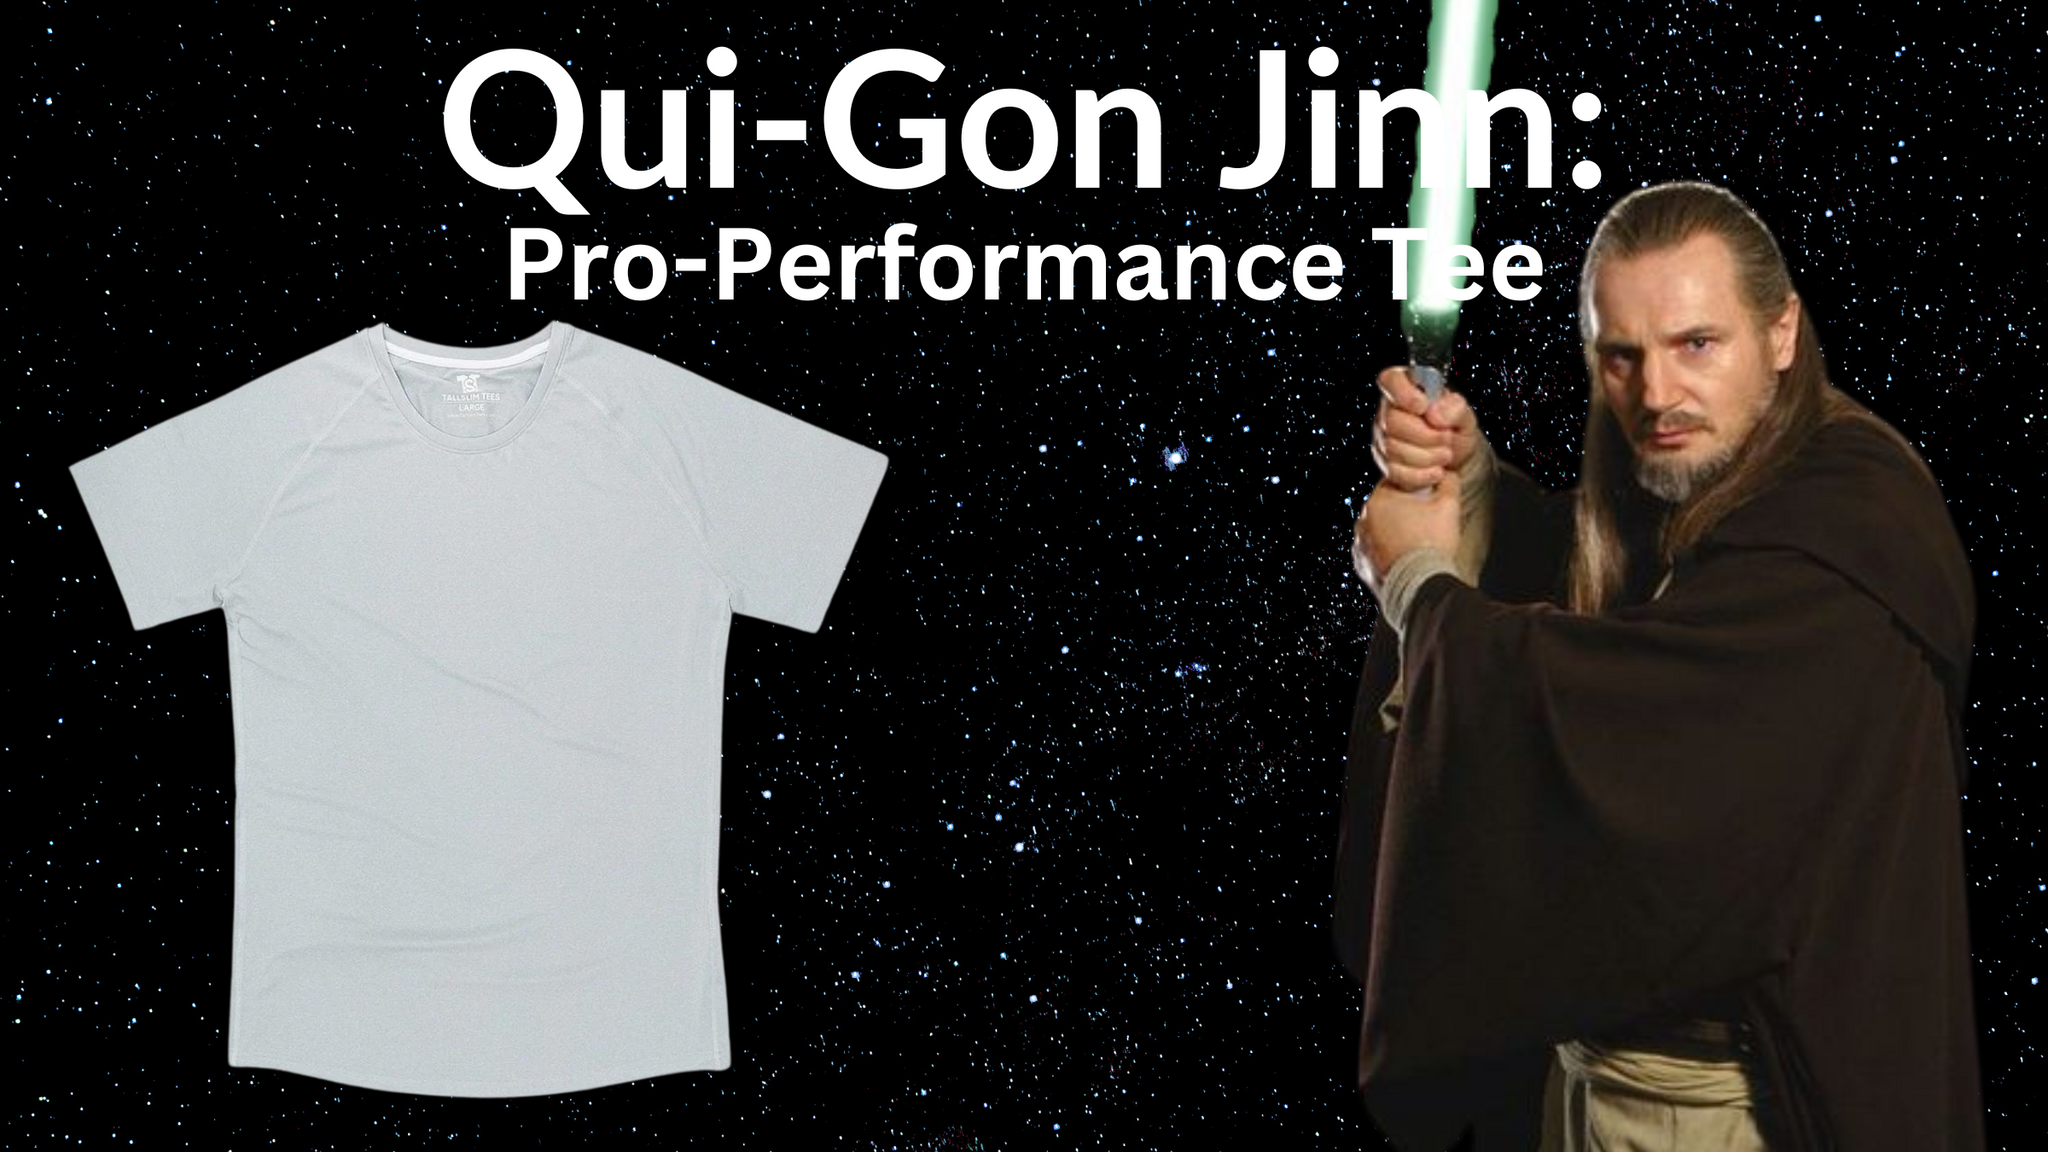 Tall Clothing for Qui-Gon Jinn